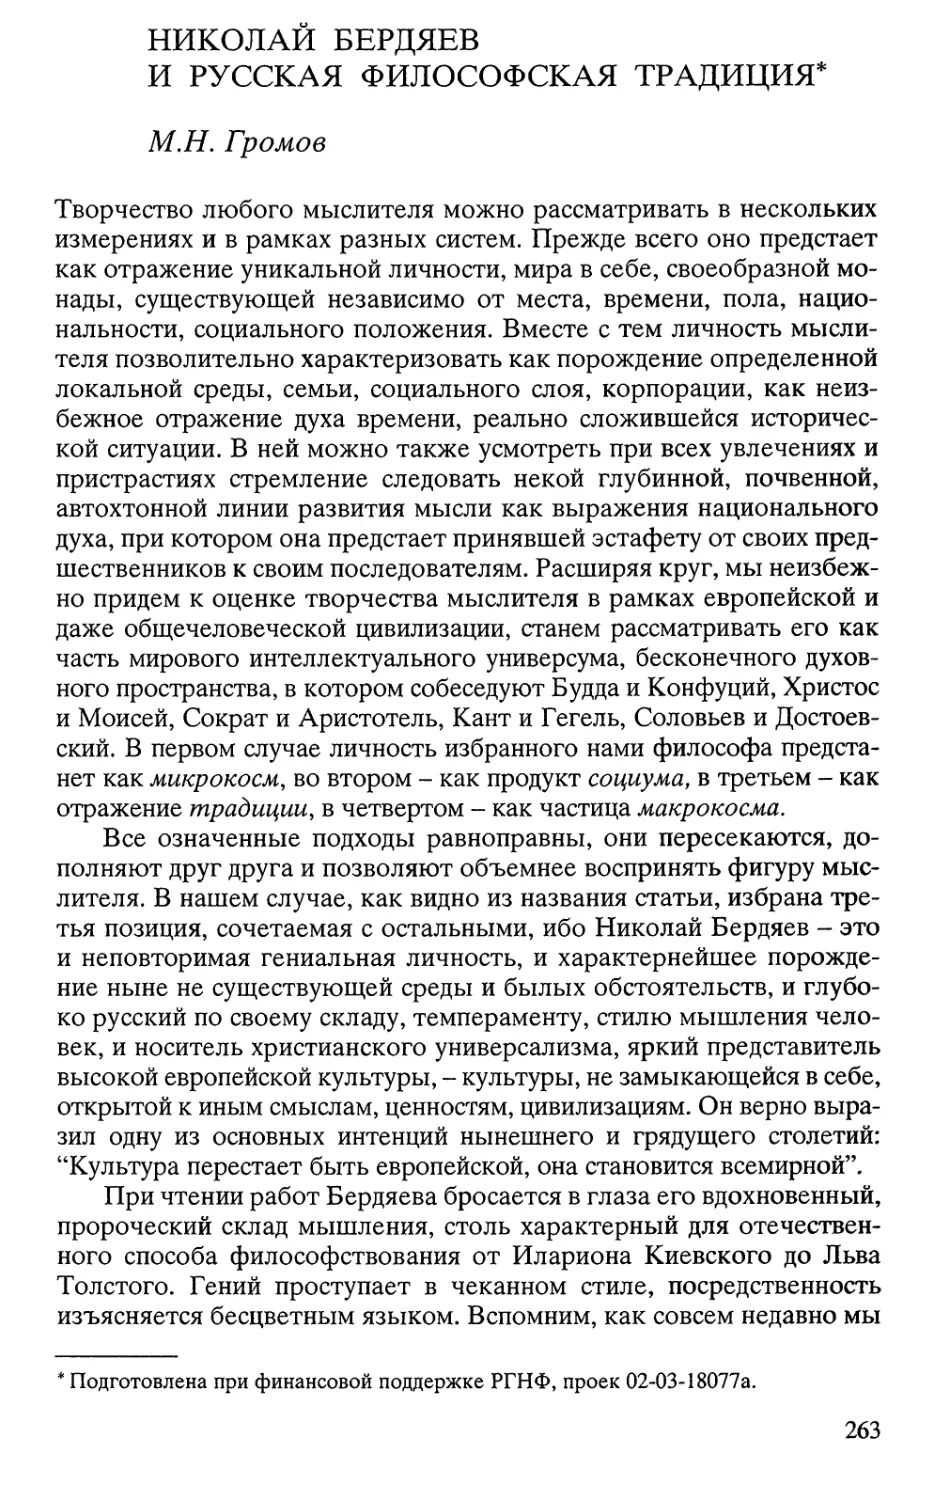 Громов М.Н. Николай Бердяев и русская философская традиция